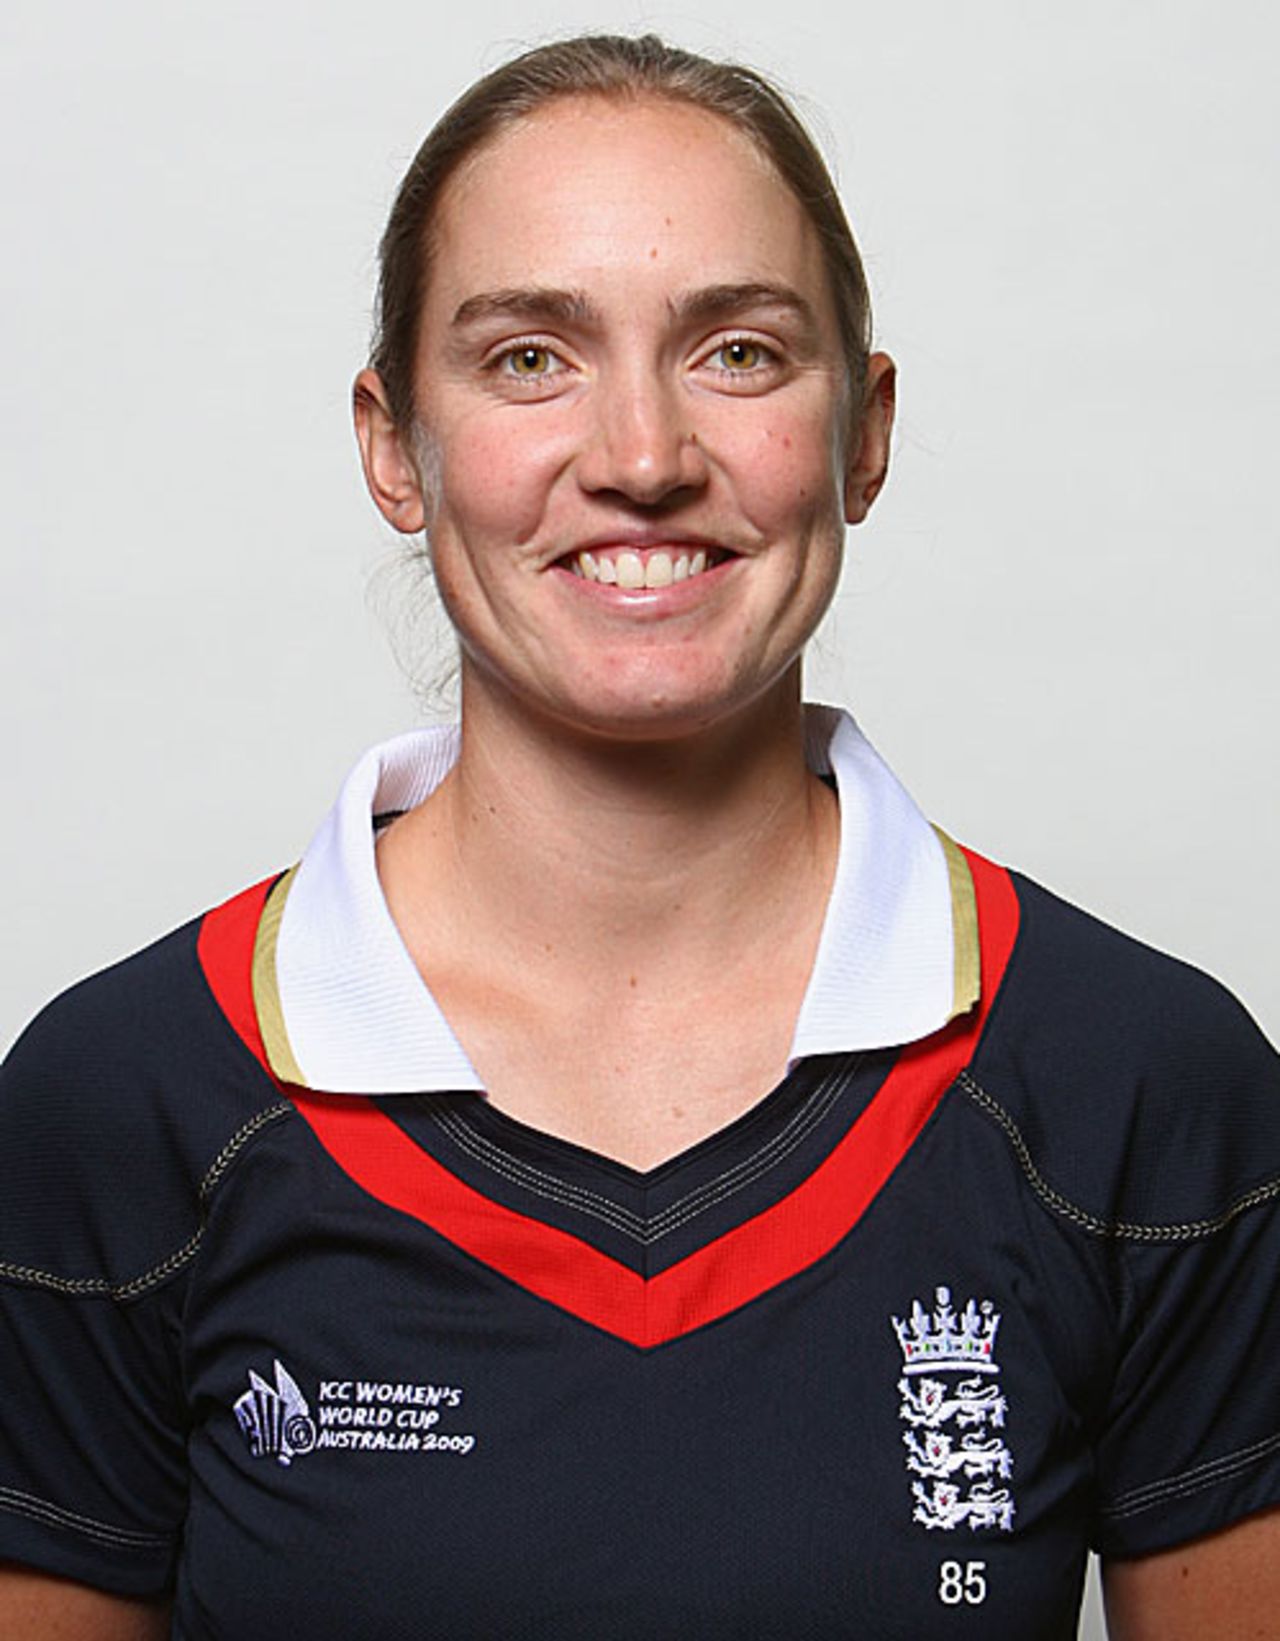 Beth Morgan, player profile, March 3, 2009